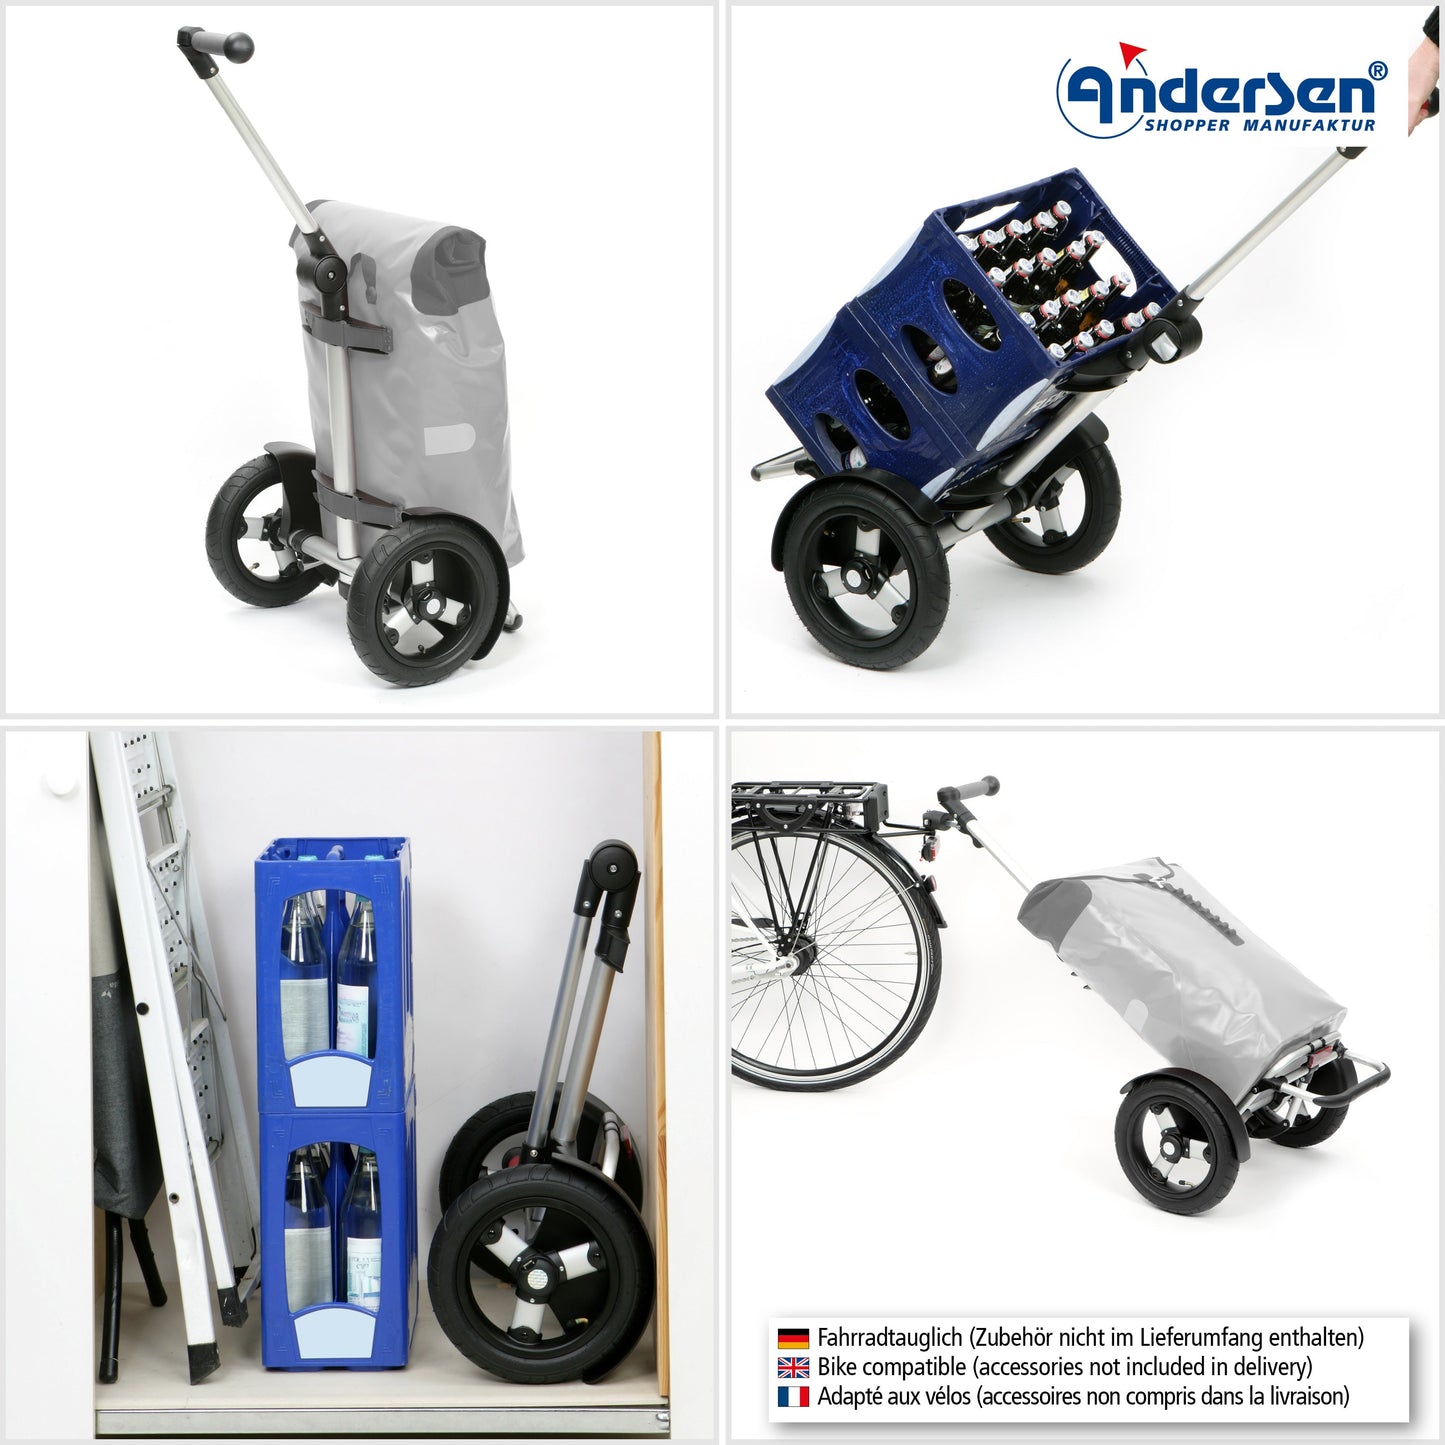 Andersen Shopper Manufaktur-Tura Shopper (Luft-Kugellagerrad 29 cm) Ortlieb petrol-www.shopping-trolley.ch-bild5